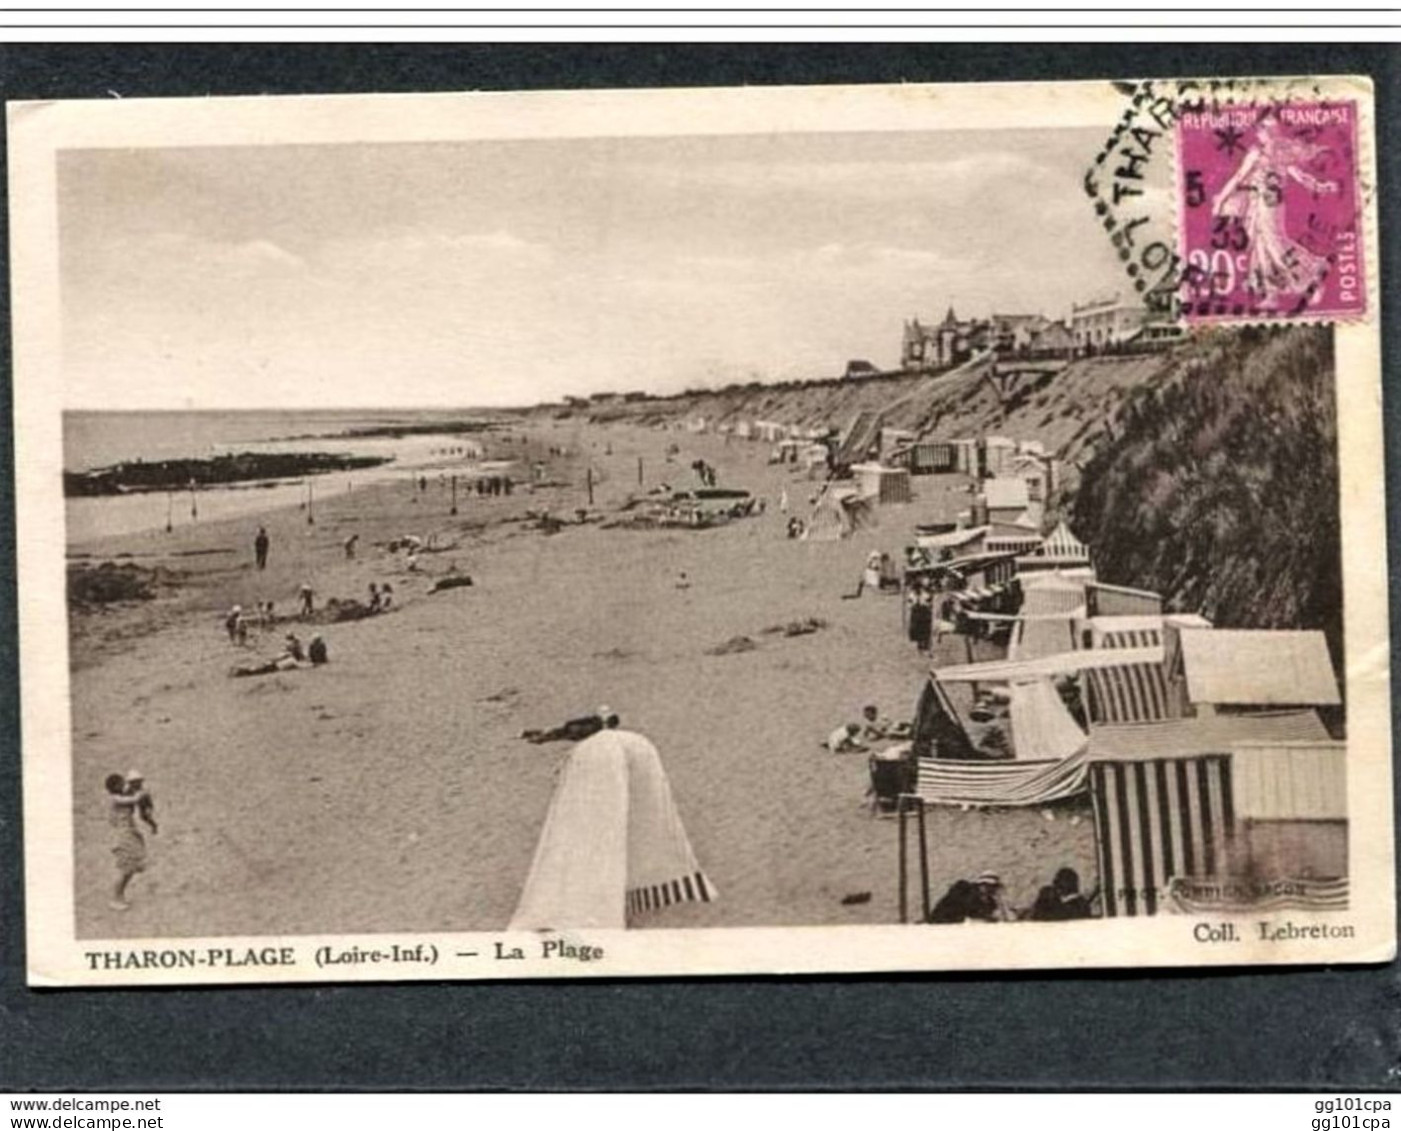 Cachet Hexagonal Pointillé "Tharon-Plage Loire Infre 1935" Semeuse Cp Tharon-Plage - Paiement Par MANGOPAY Seulement - Manual Postmarks